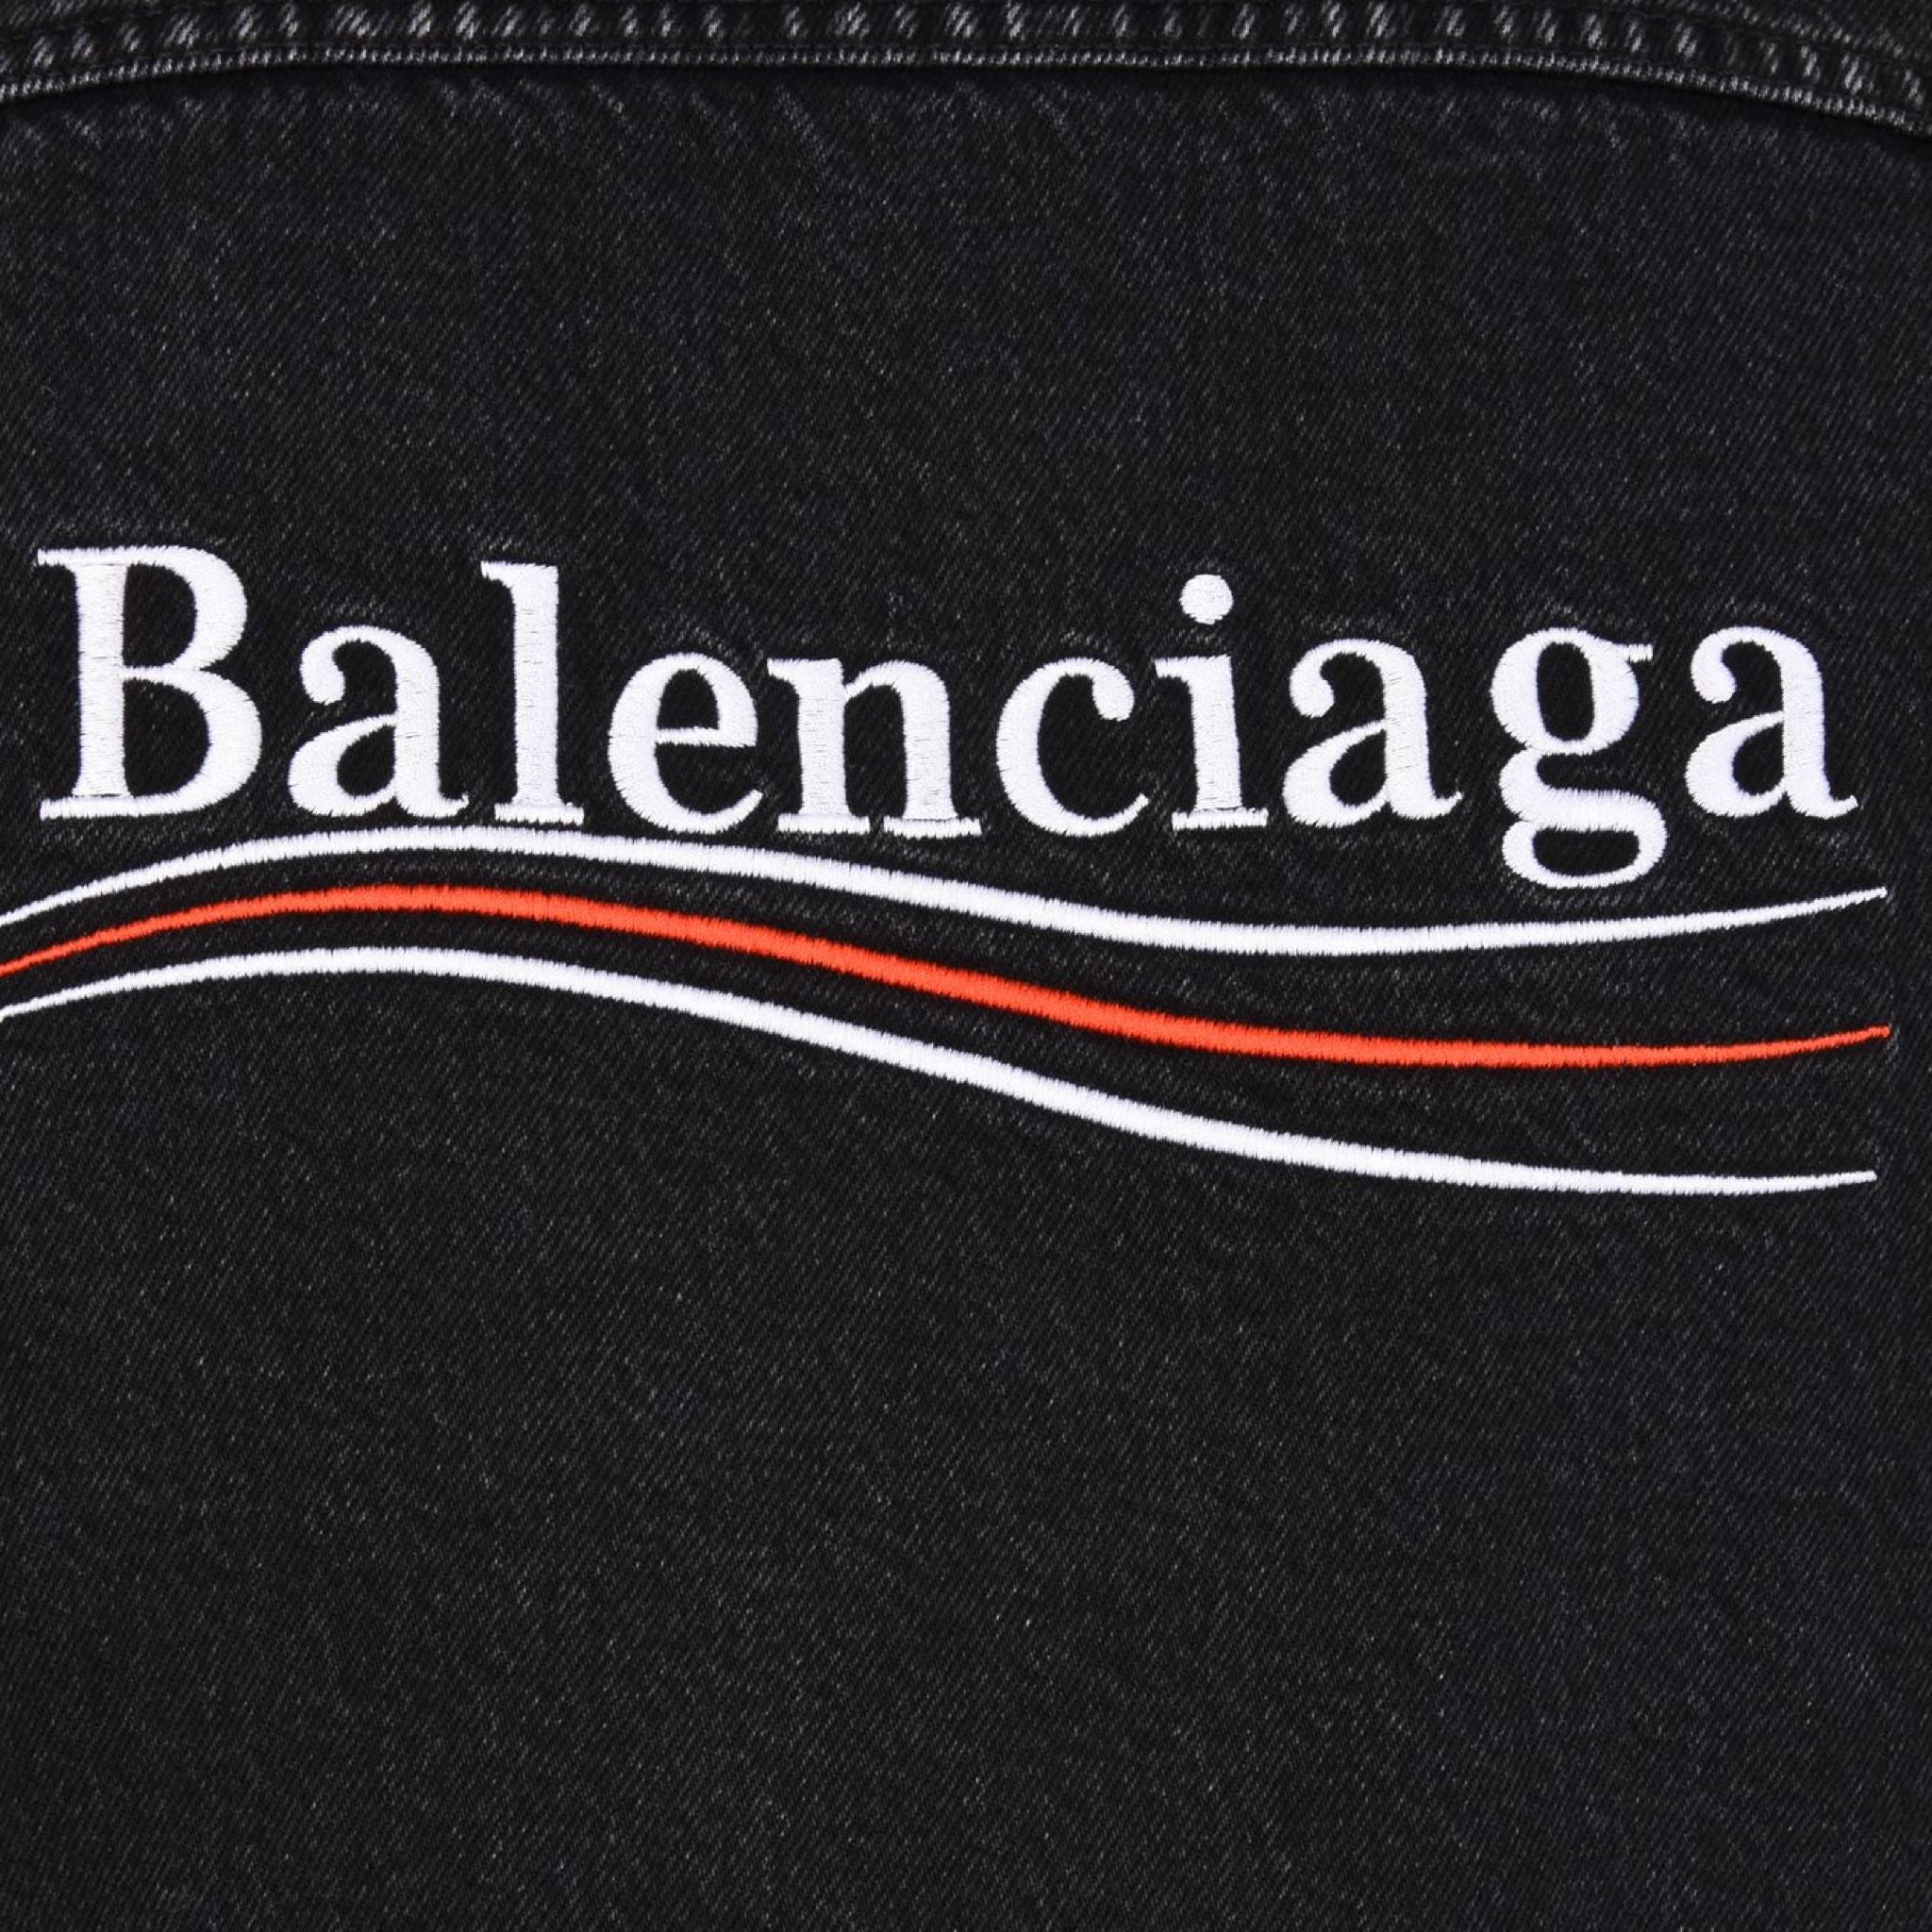 Balenciaga Political Campaign Black Tee  eBay